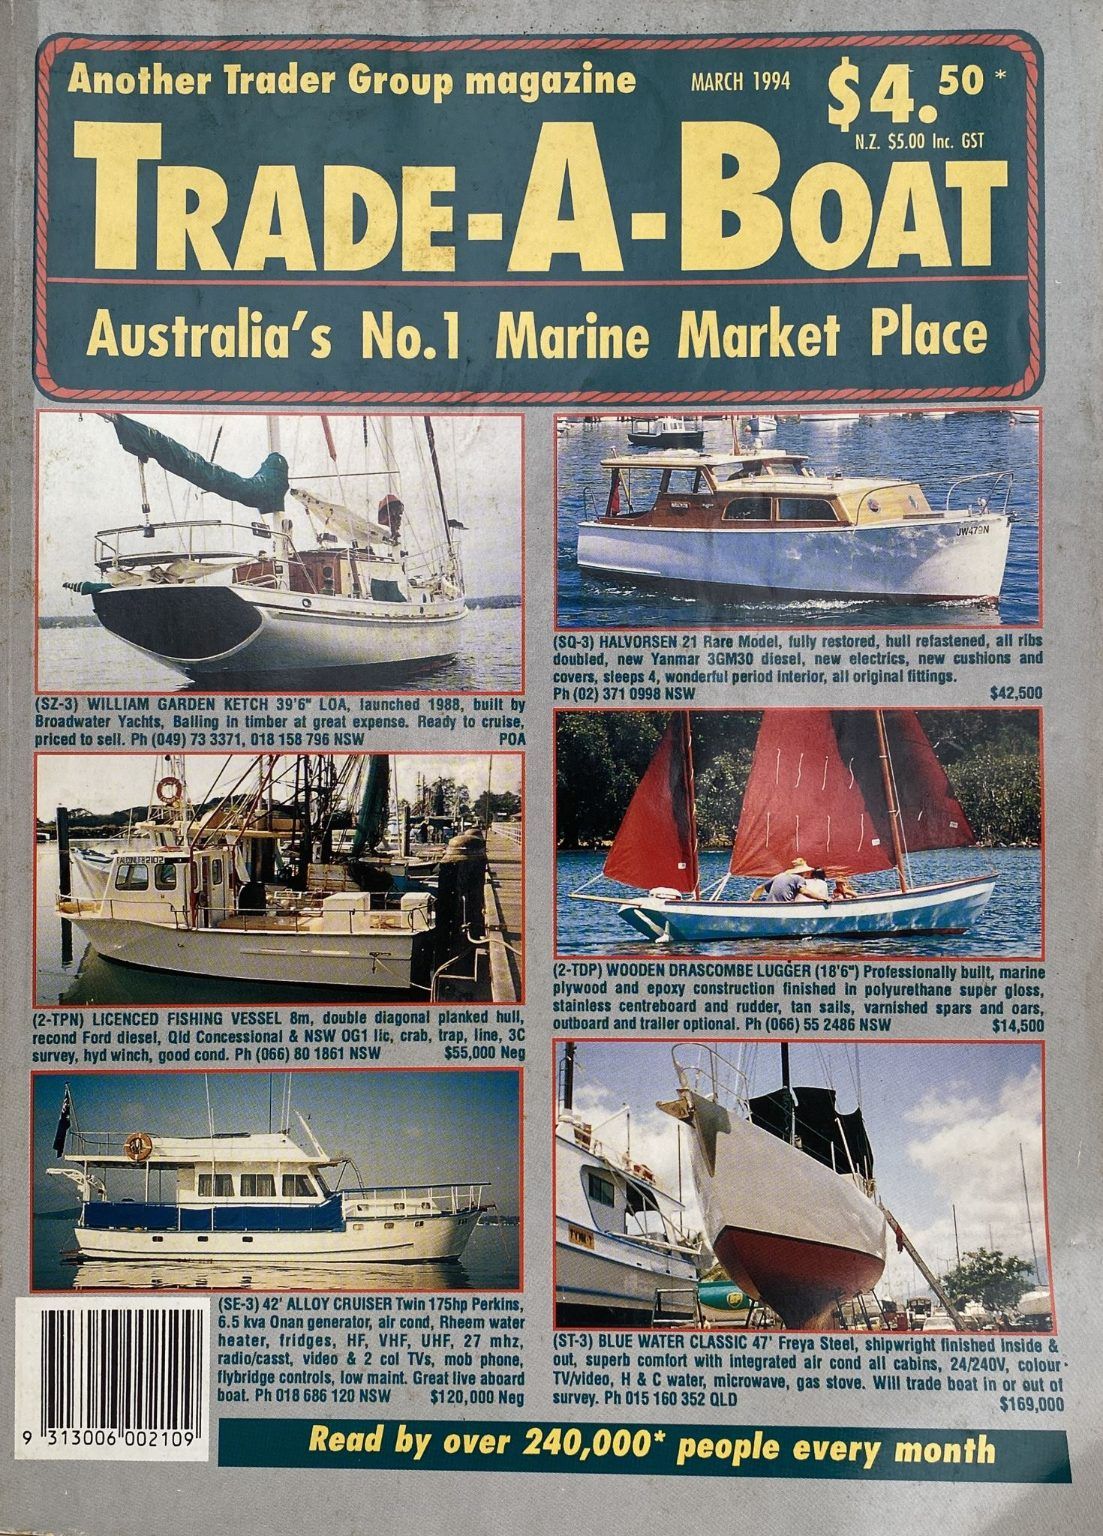 VINTAGE MAGAZINE: Trade-A-Boat, Australia - March 1994